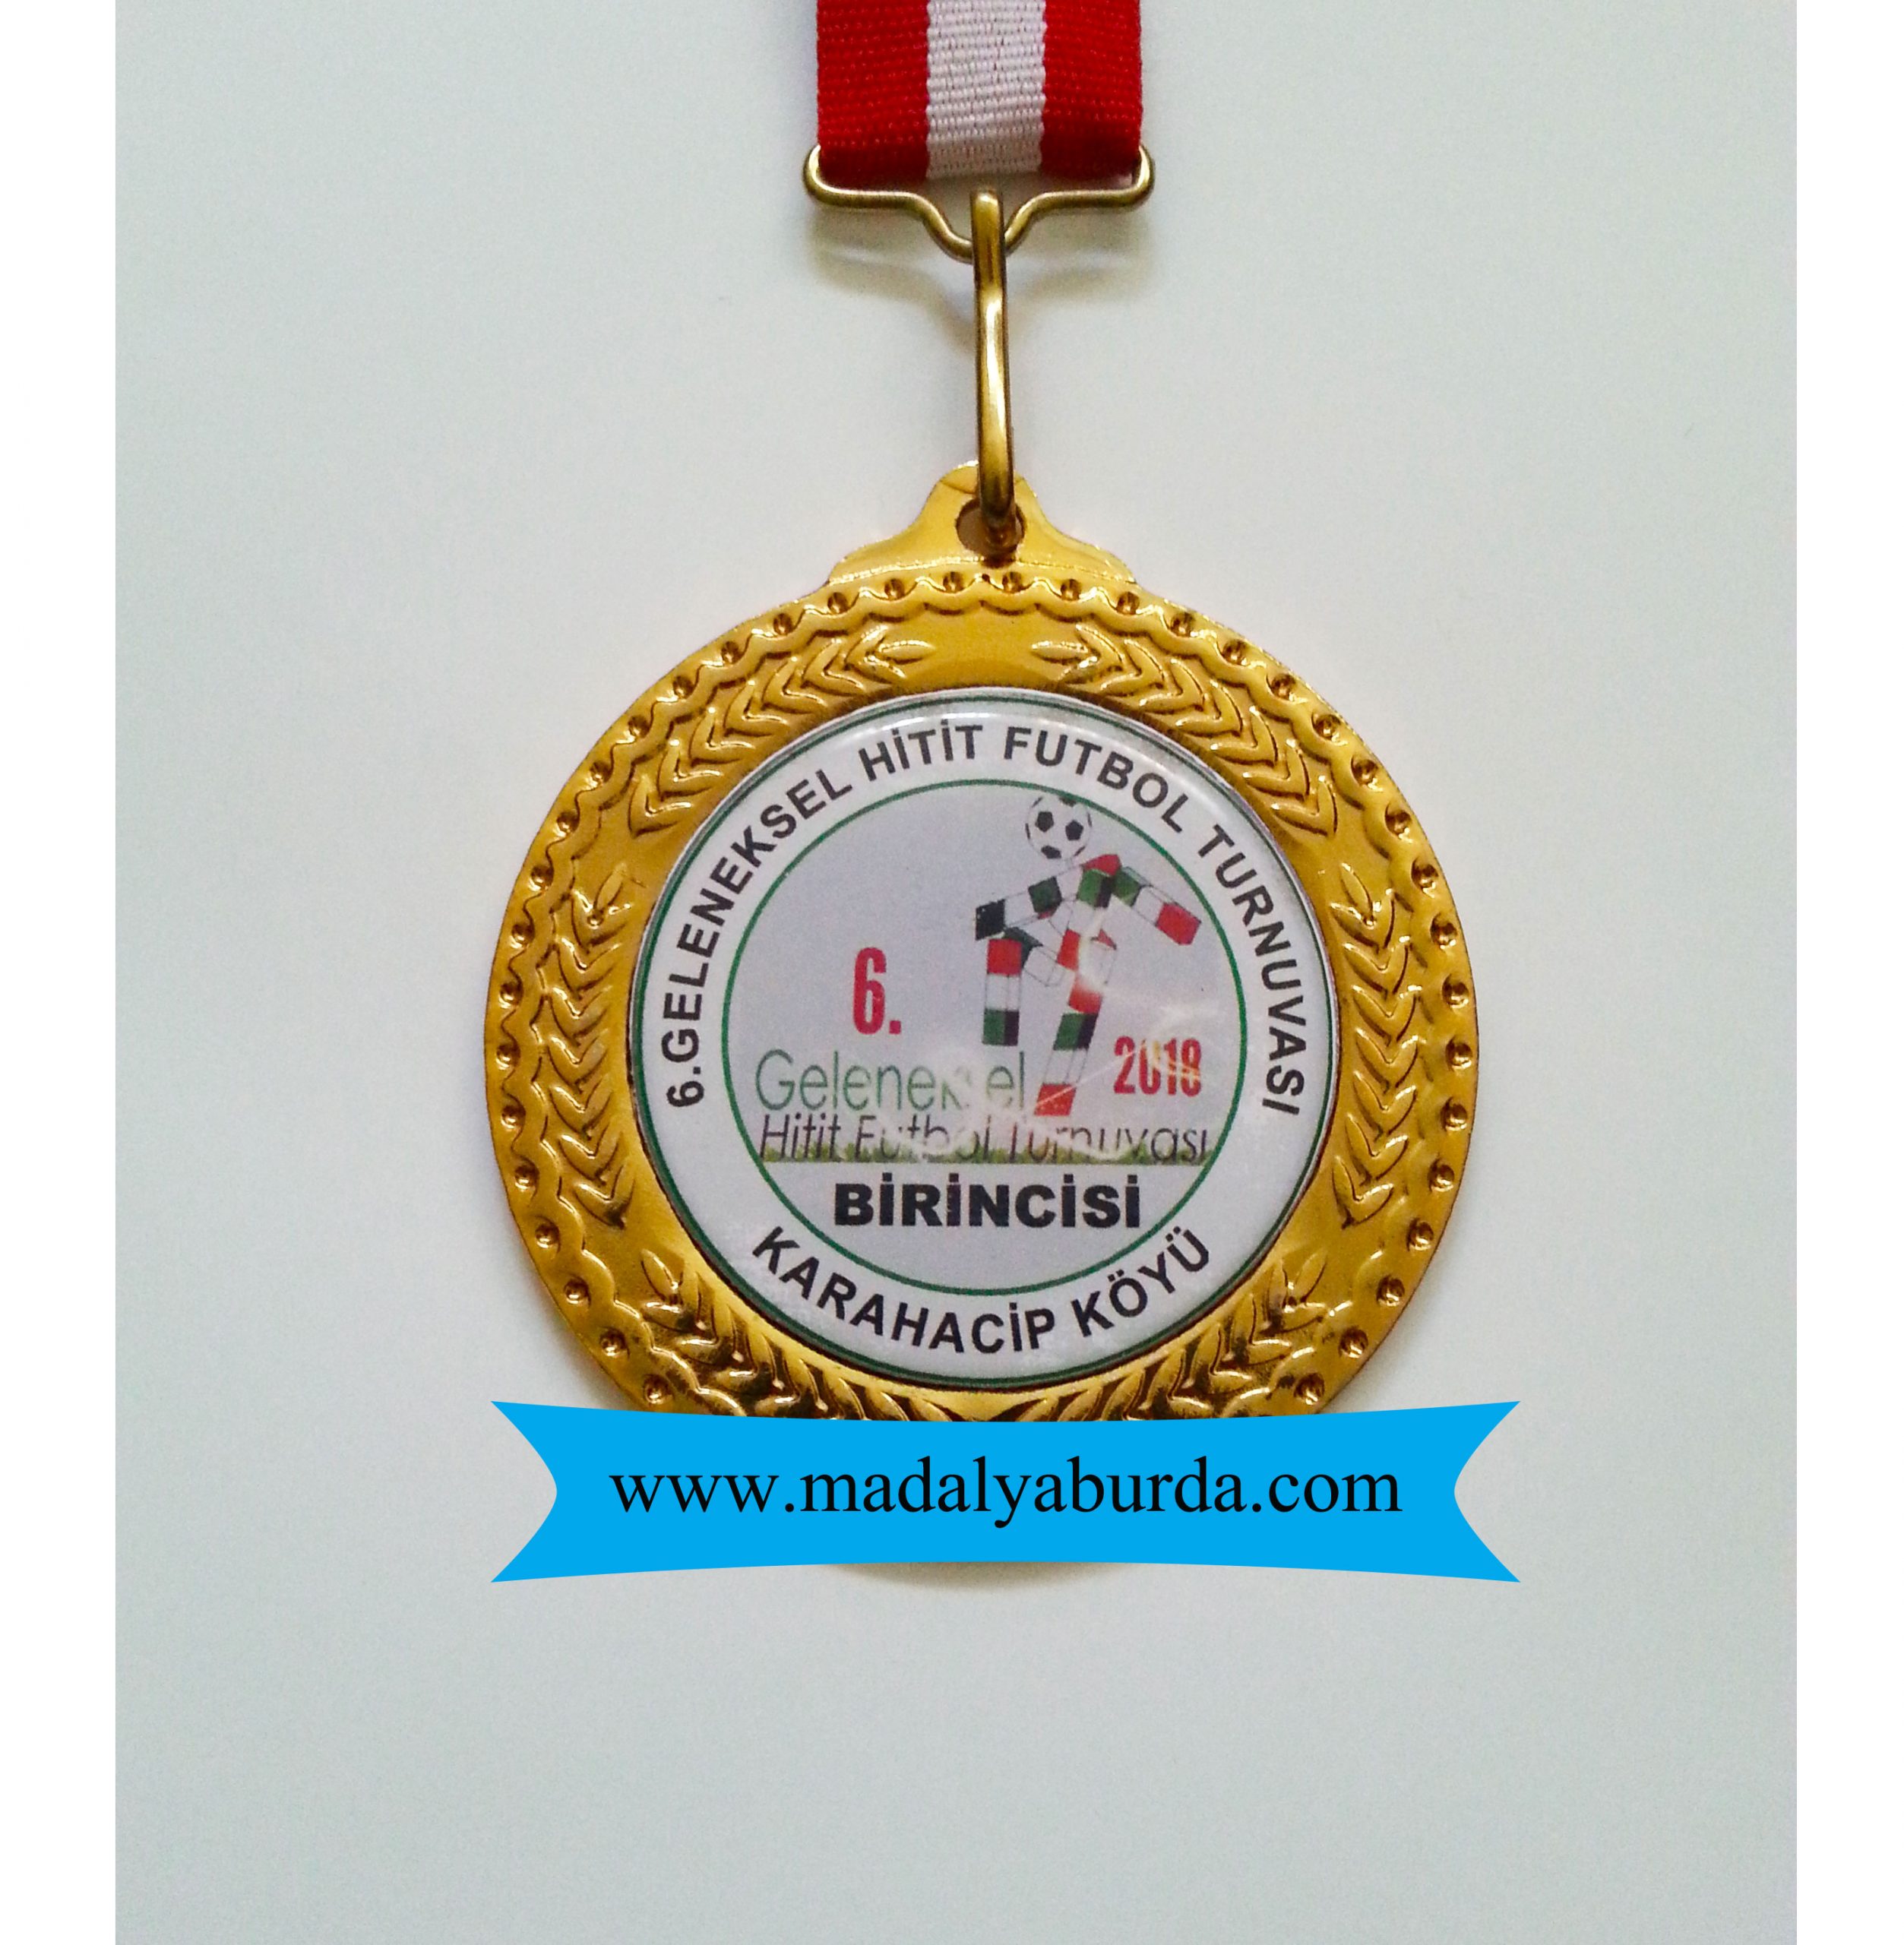 turnuva-madalyası-birincilik madalyası